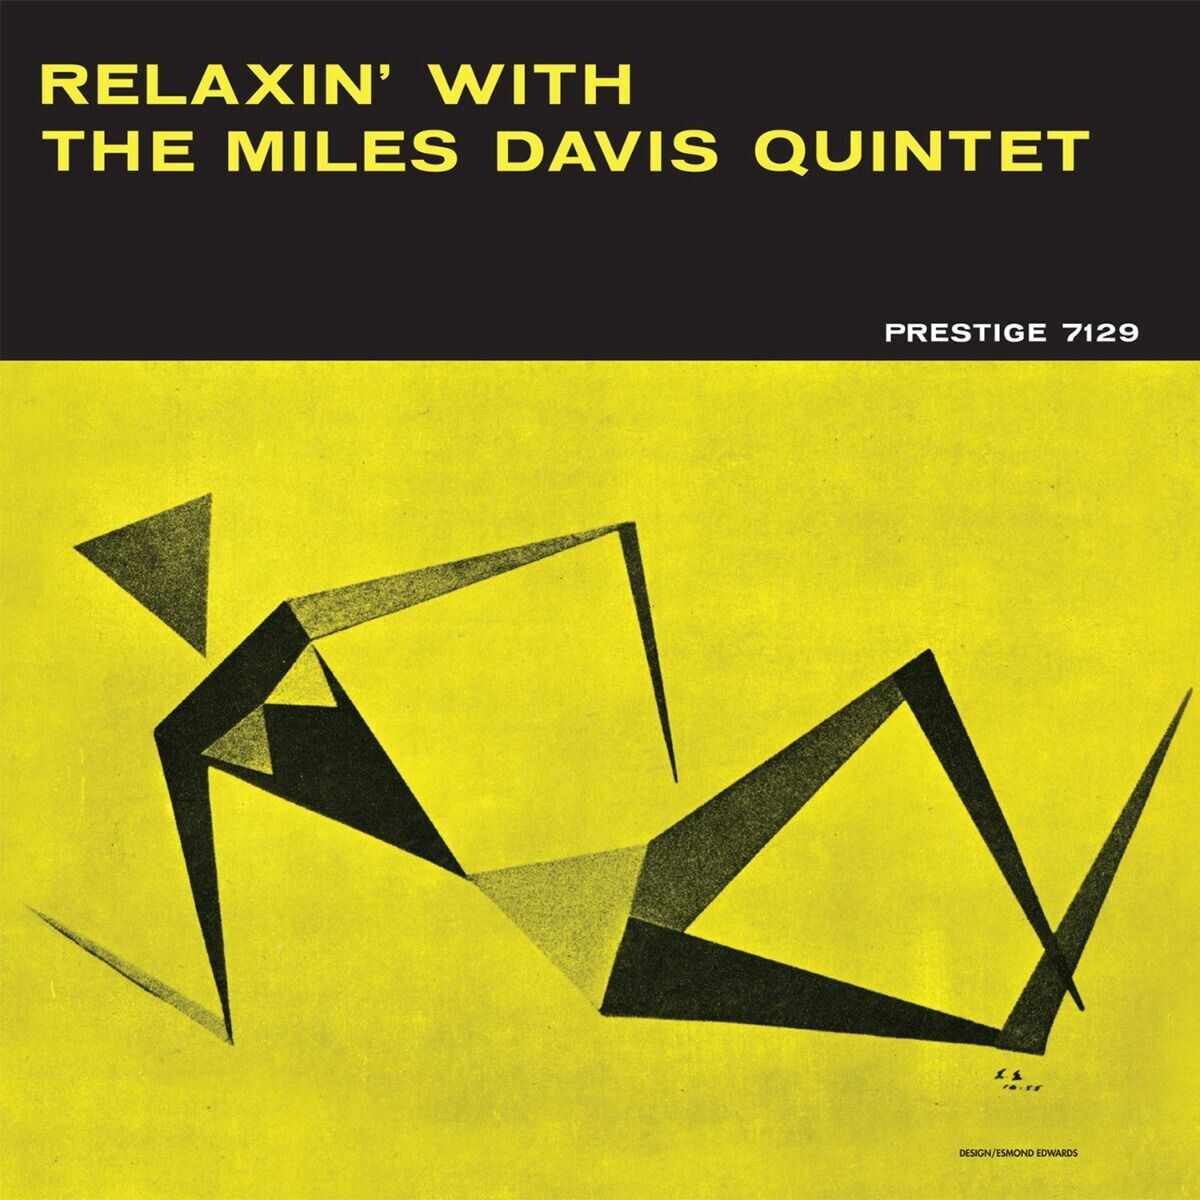 THE MILES DAVIS QUINTET - RELAXIN' WITH THE MILES DAVIS QUINTET Vinyl LP